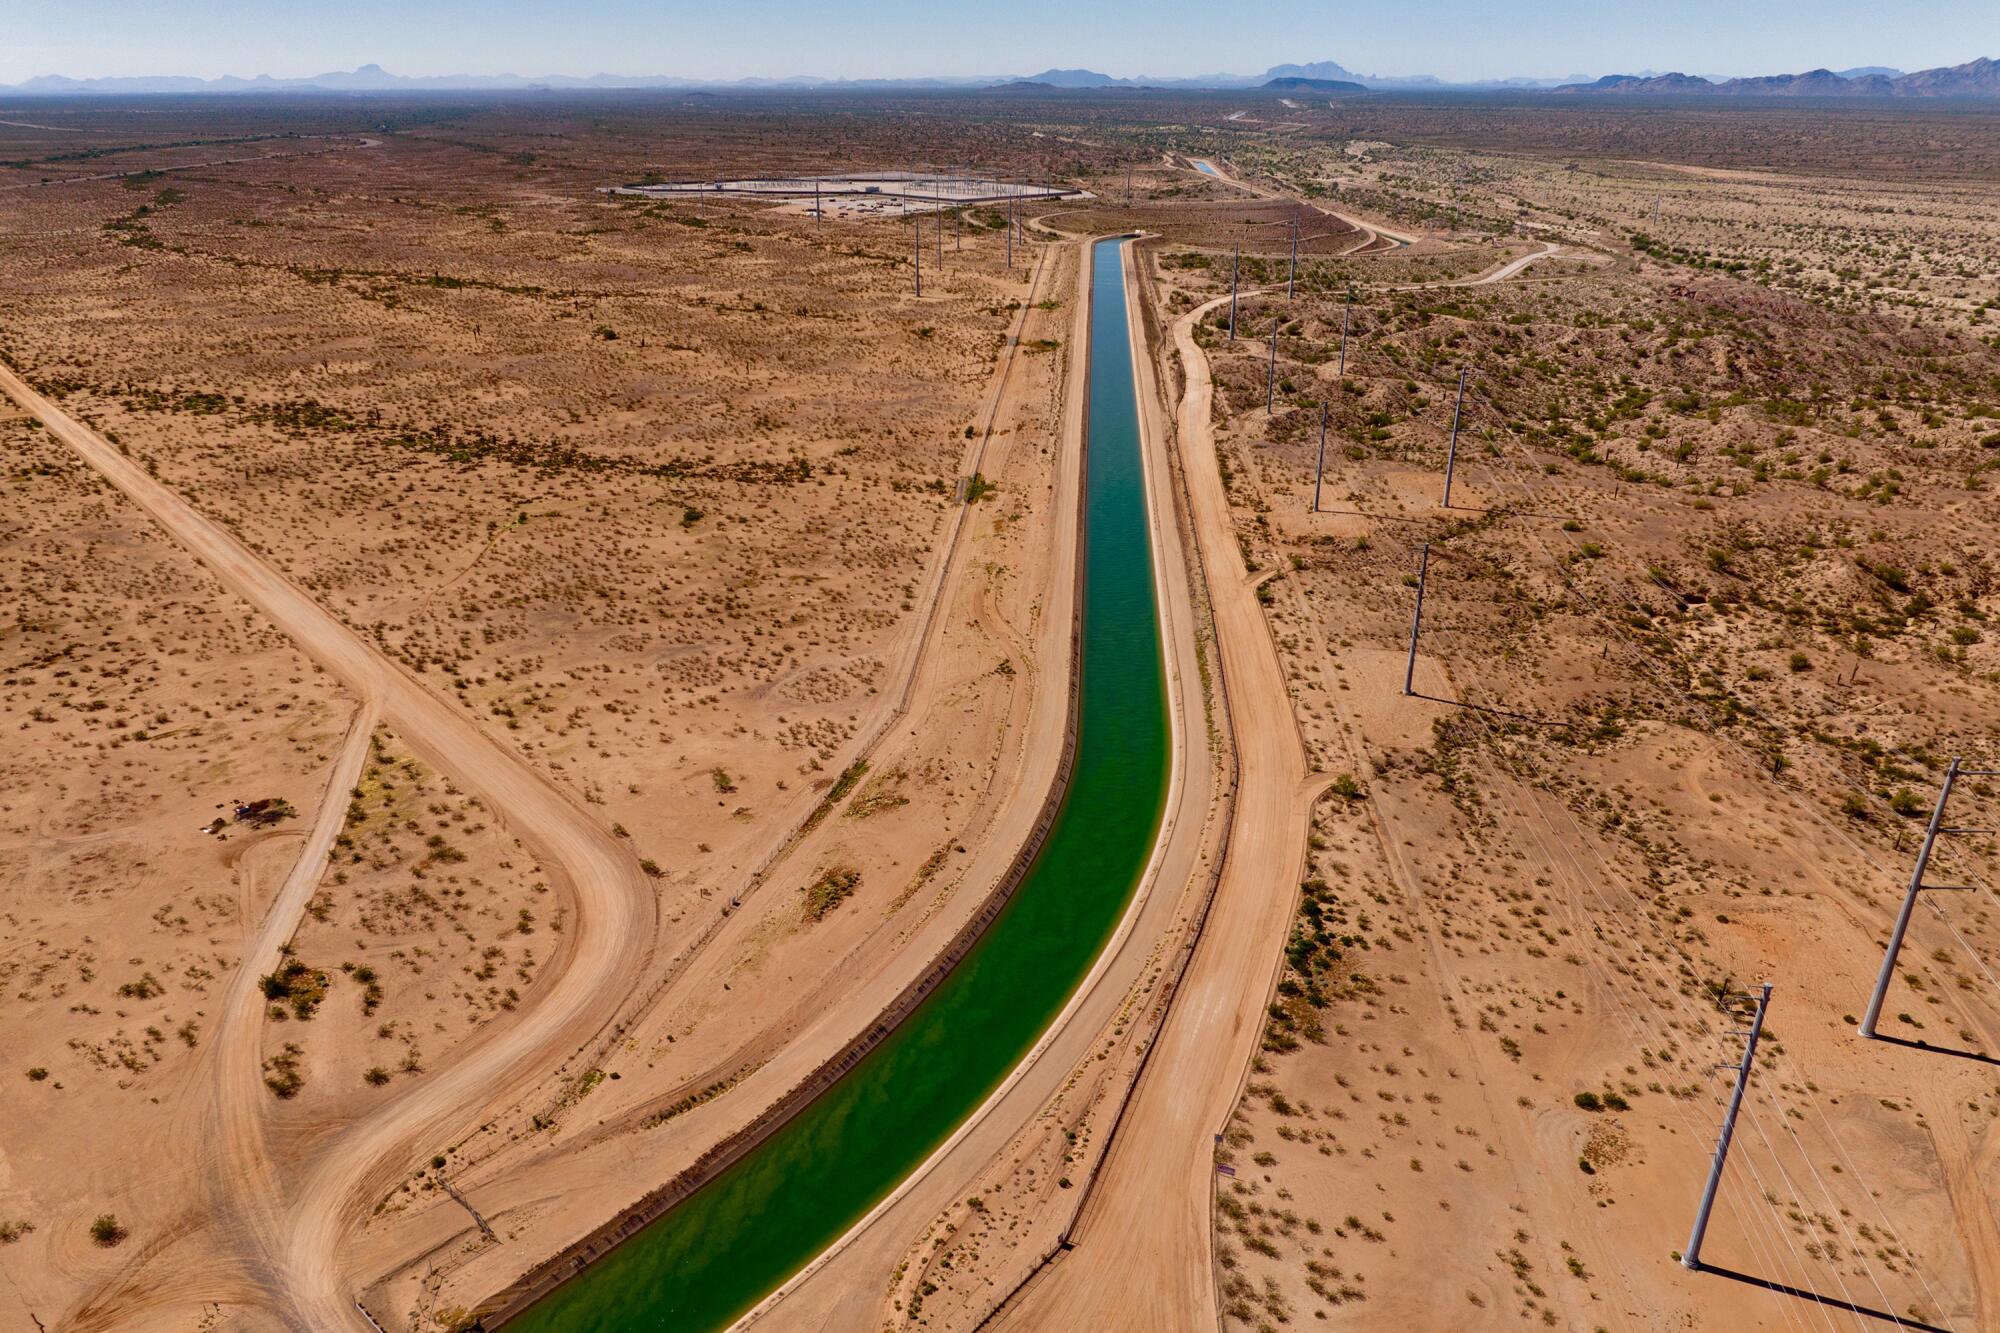 An overhead shot of a canal running through an arid landscape 